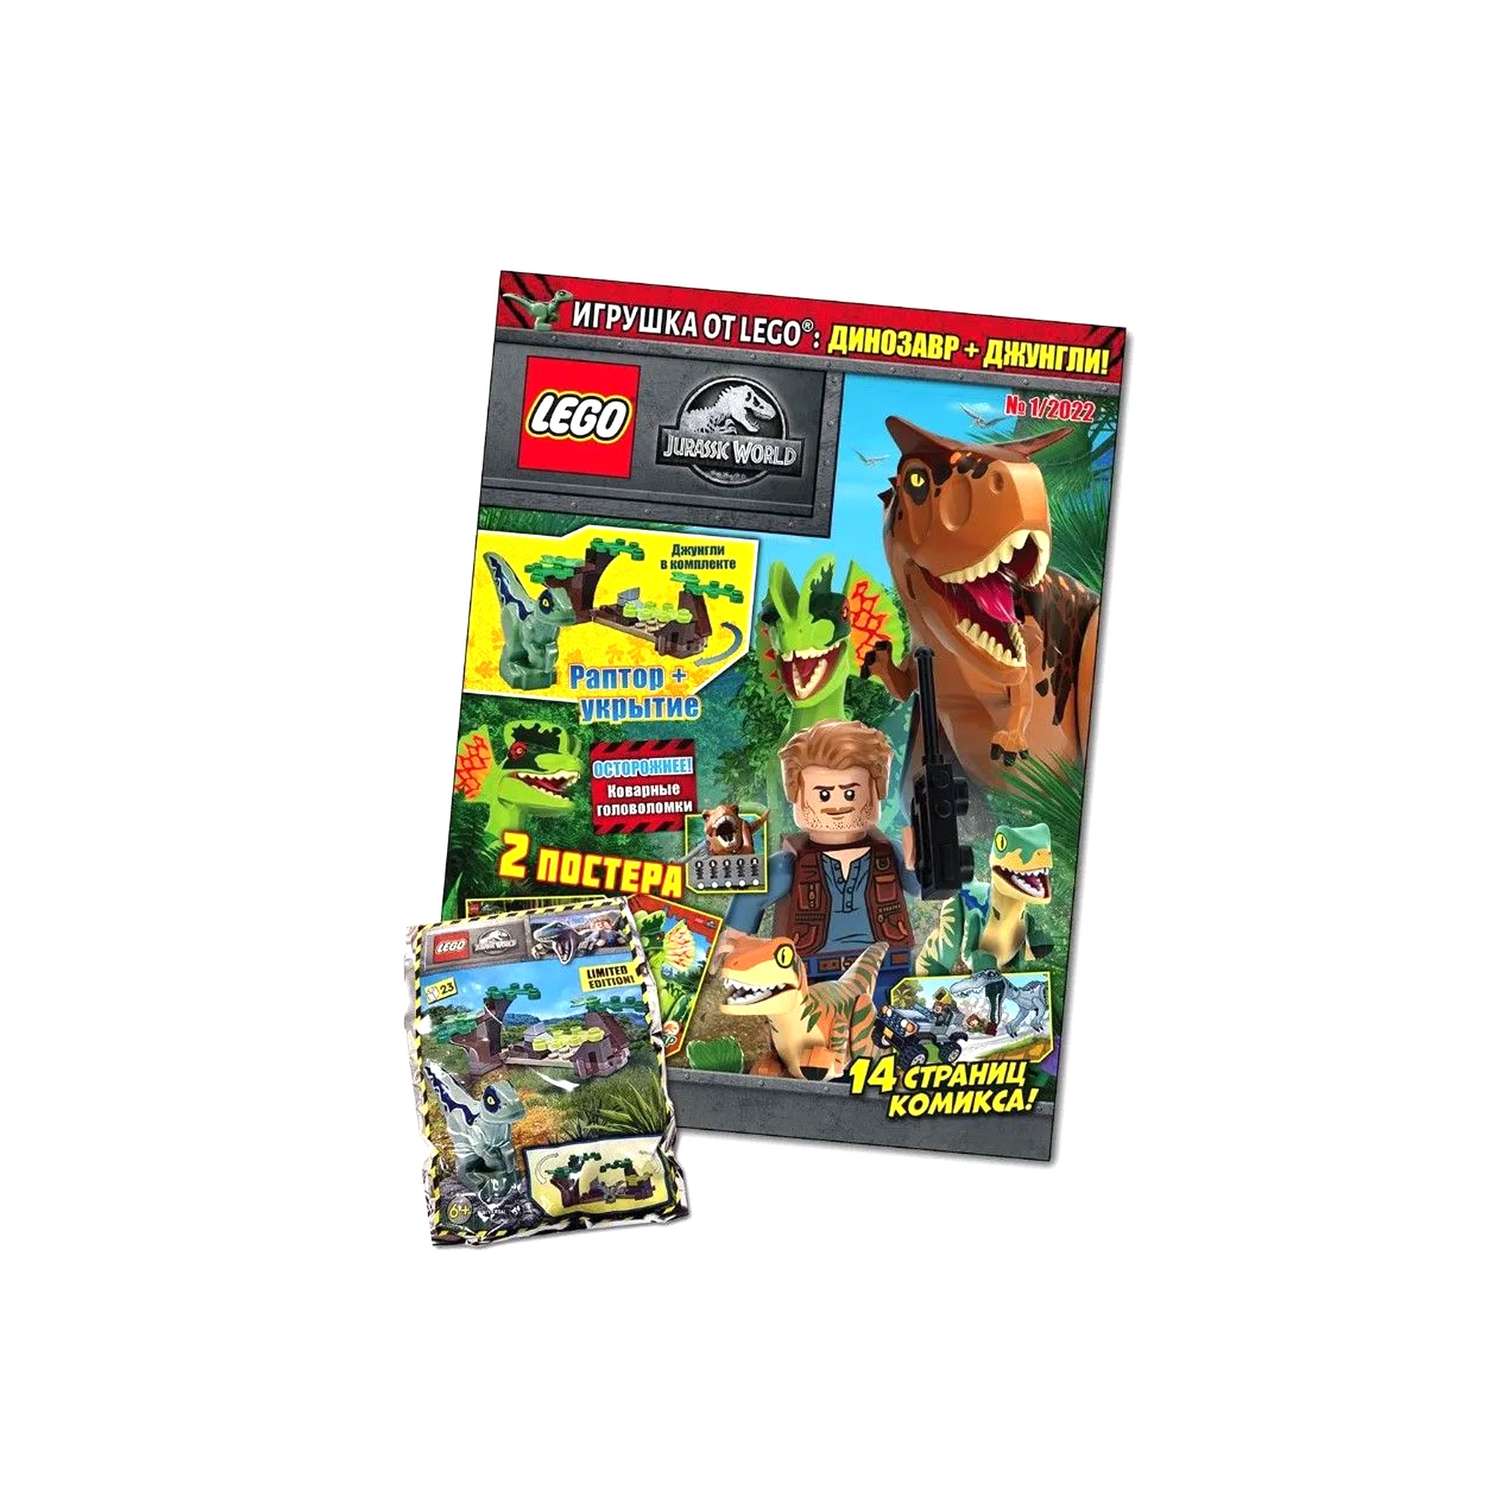 Журнал LEGO Jurassic World с вложением (конструктор) (1/22) Лего Мир Юрского периода - фото 1